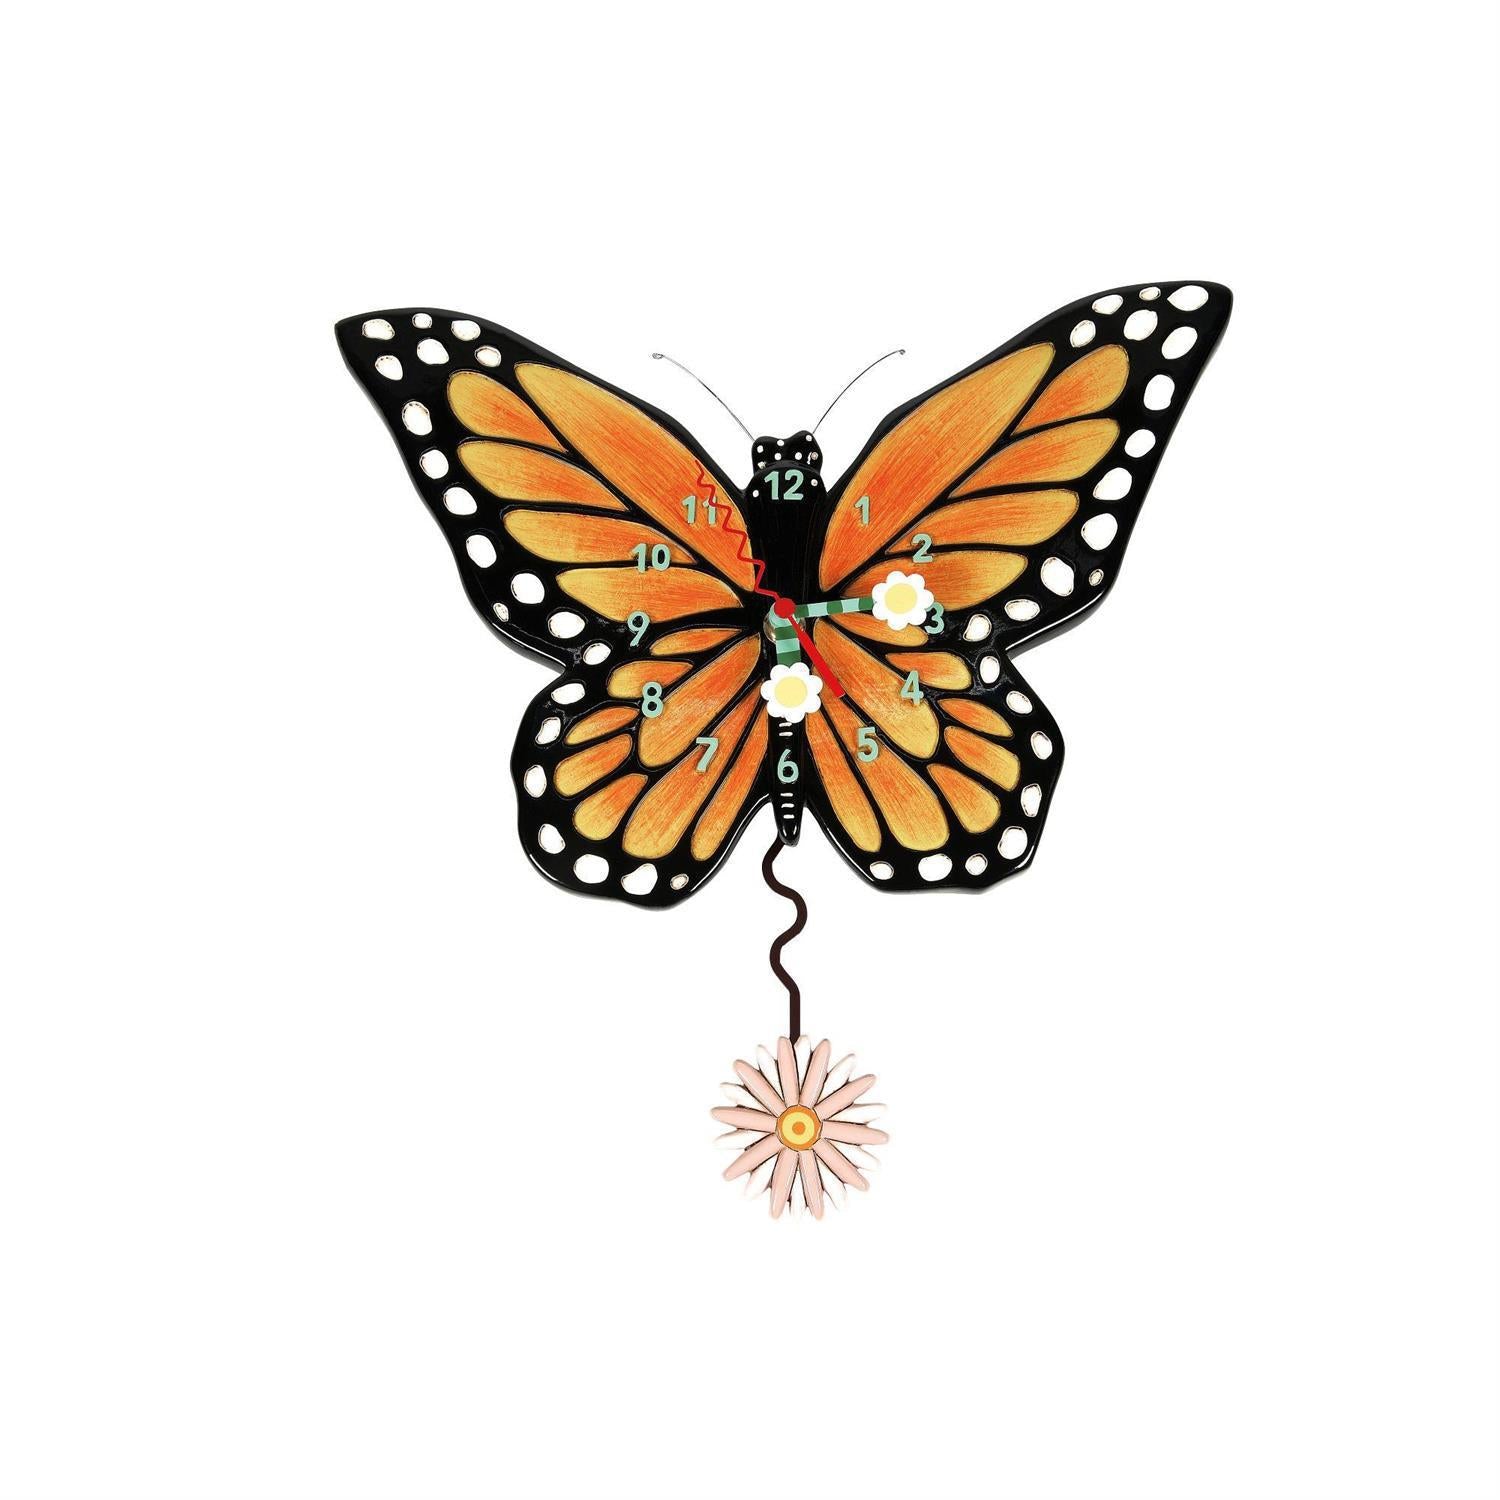 Spread Your Wings Butterfly Allen Design Clock